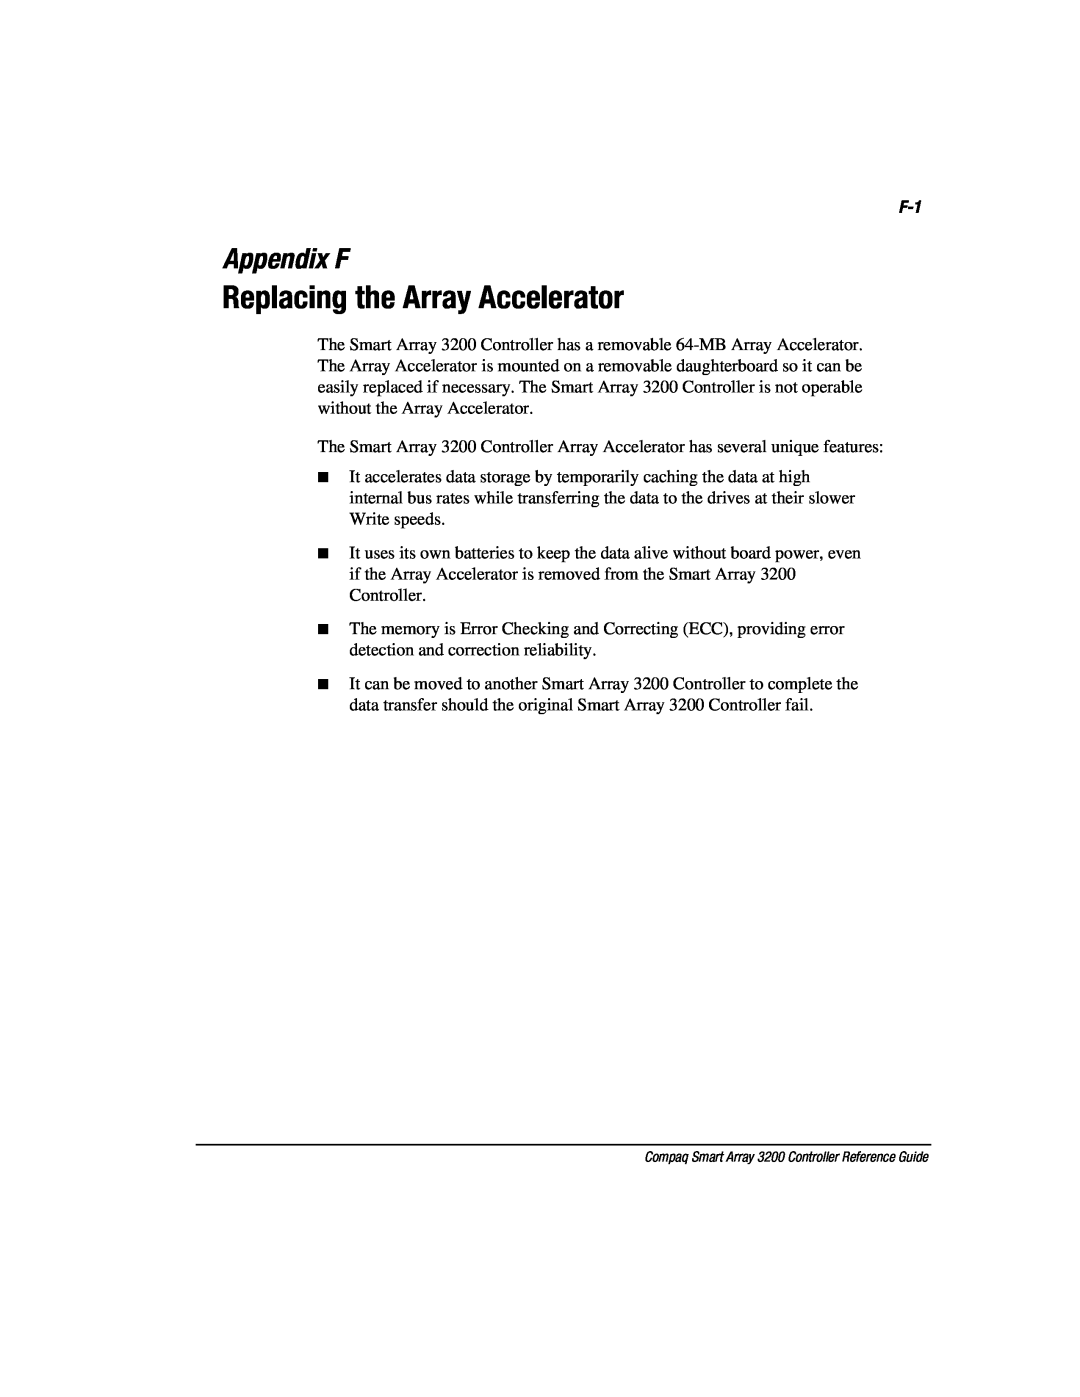 Compaq 3200 manual Replacing the Array Accelerator, Appendix F 